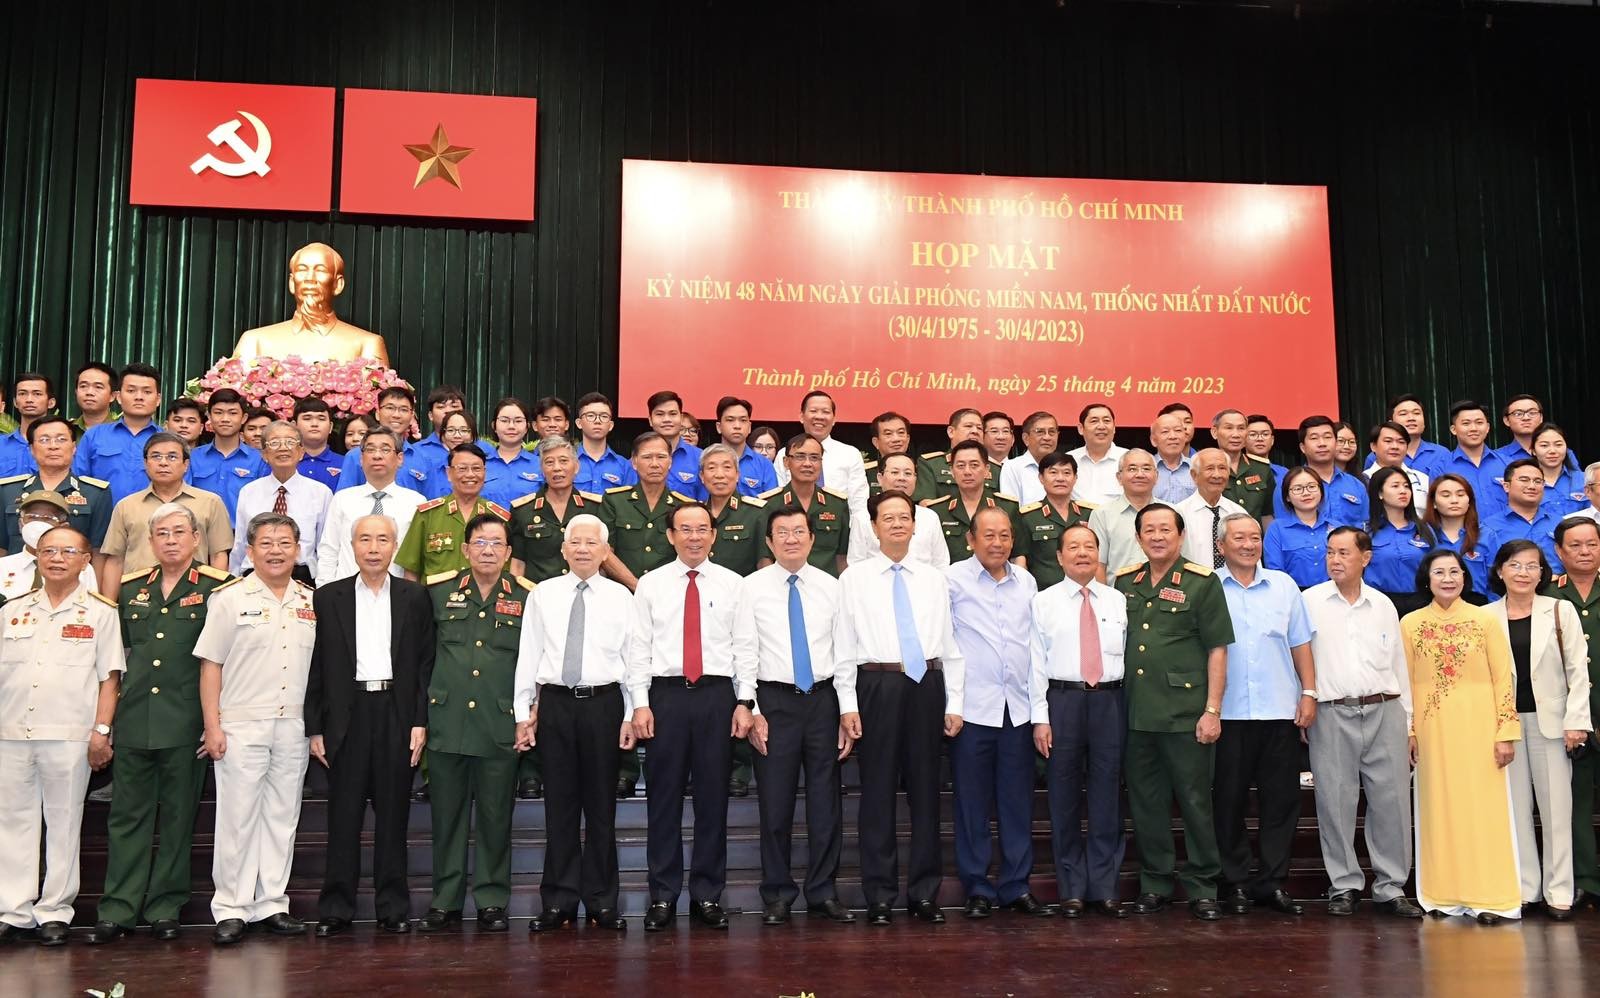 Các đồng chí lãnh đạo, nguyên lãnh đạo Đảng, Nhà nước, Ủy ban Trung ương MTTQ Việt Nam, các tướng lĩnh và lãnh đạo TP. Hồ Chí Minh dự buổi họp mặt (Ảnh: VIỆT DŨNG).